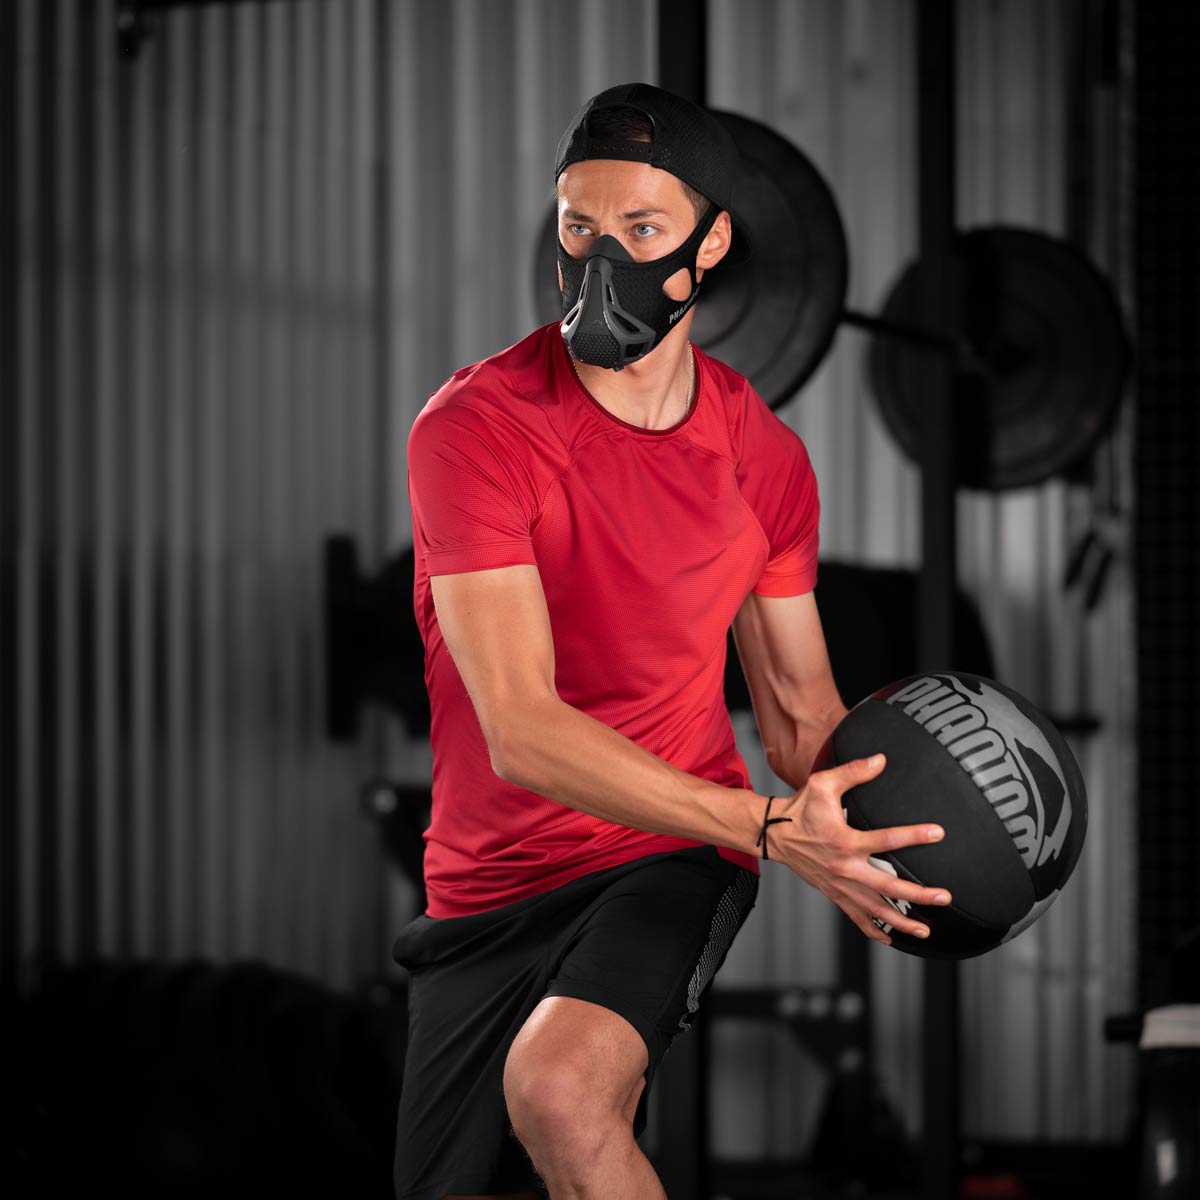 Die Phantom Trainingsmaske eignet sich ideal um deine Fitness auf das nächste Level zu heben. Egal ob beim Kraftsport oder im Kampfsport.